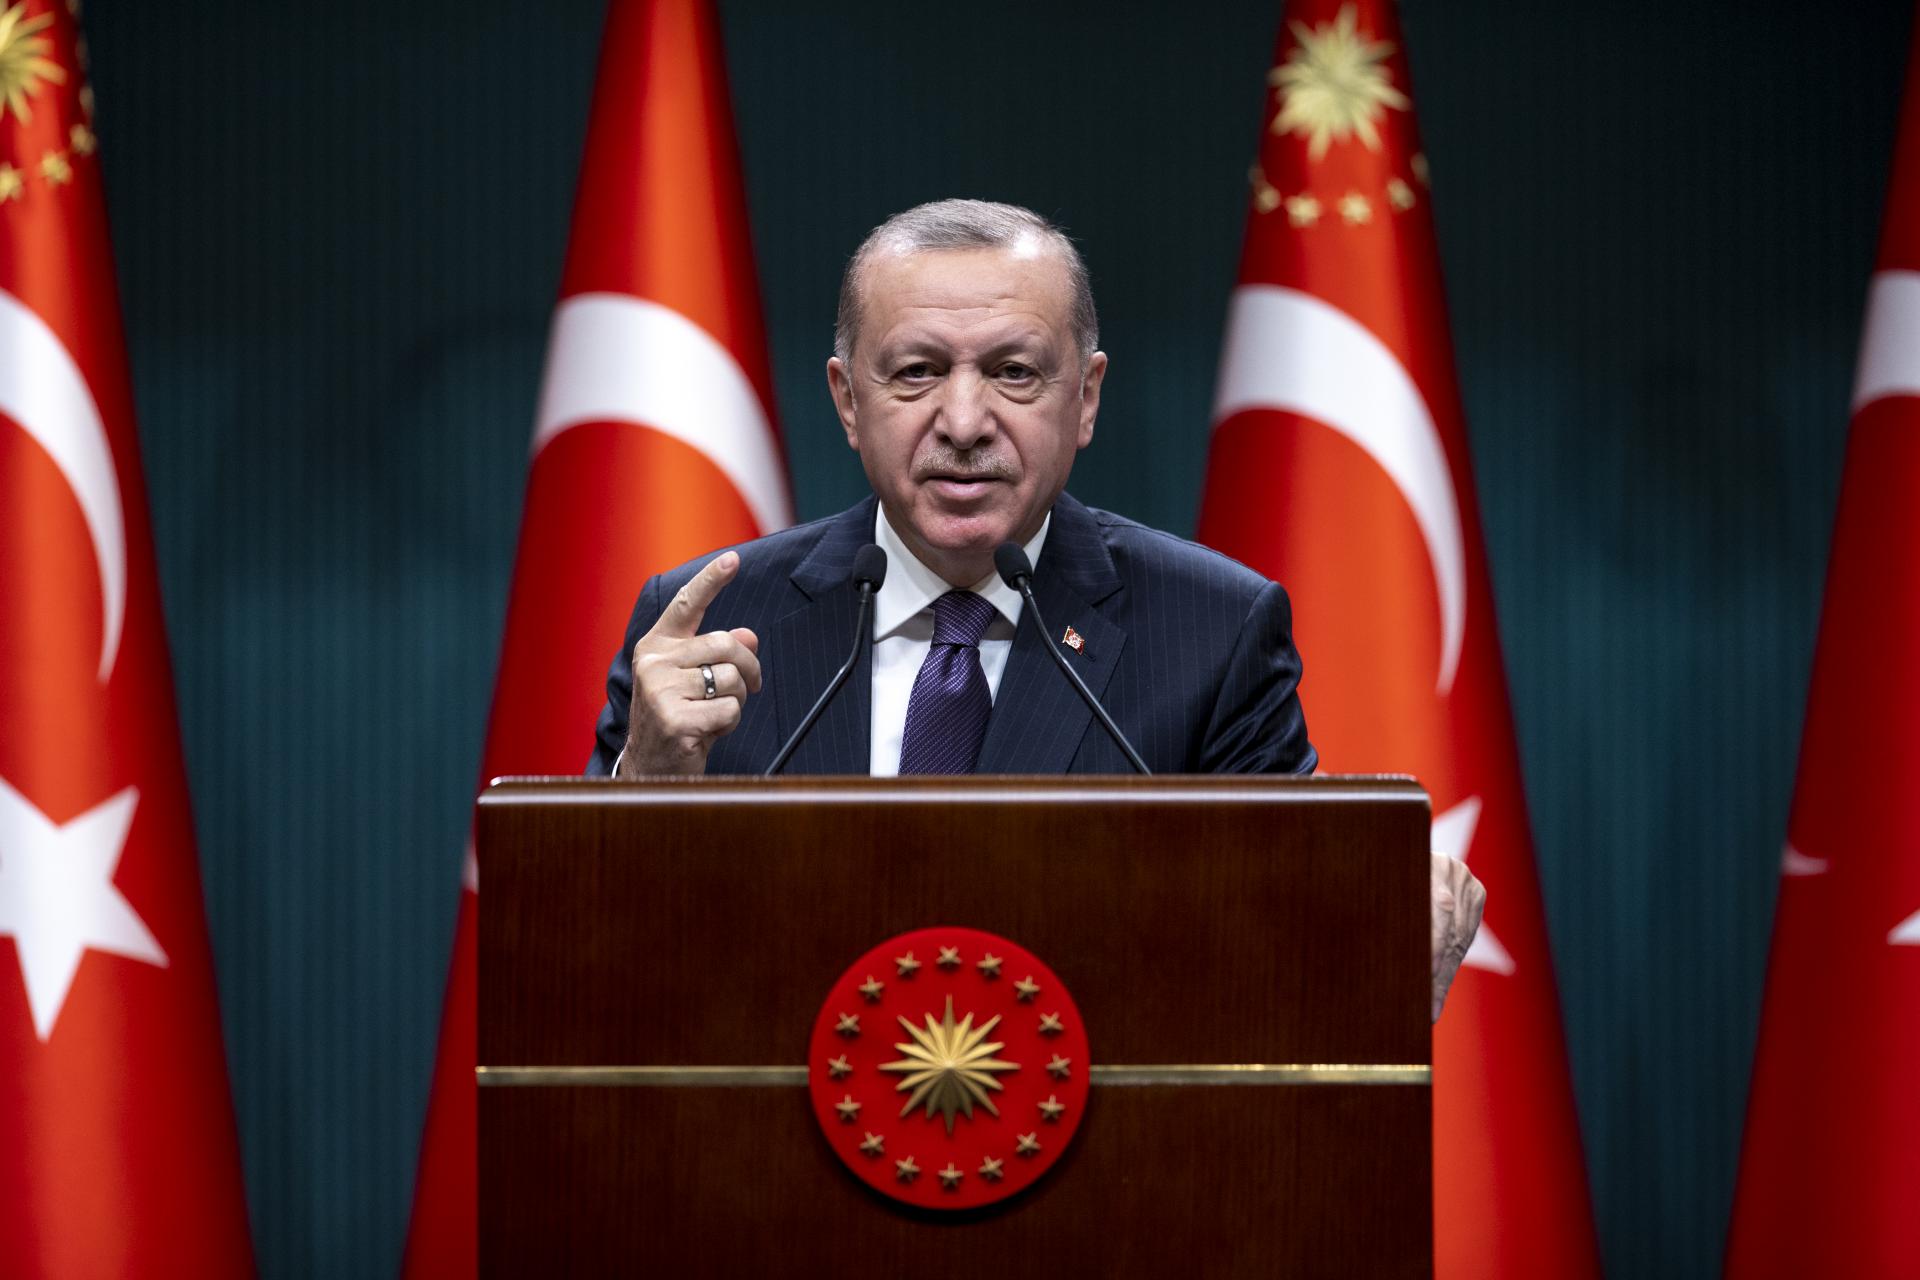 Erdoğan:alaptalanok Biden amerikai elnök 1915-ös eseményekkel kapcsolatros állításai